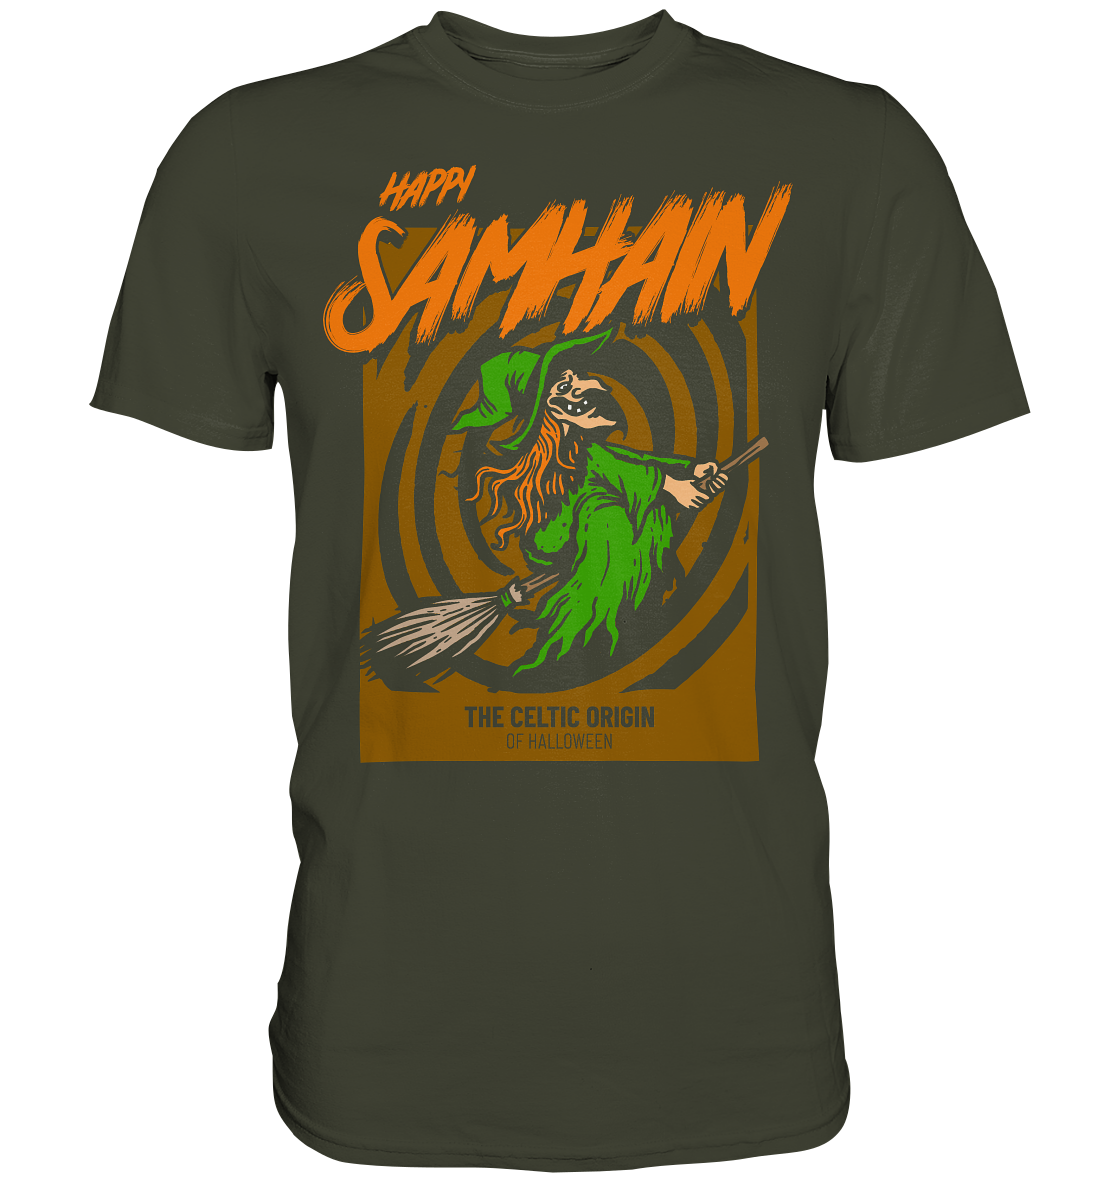 Happy Samhain "Witch" - Premium Shirt